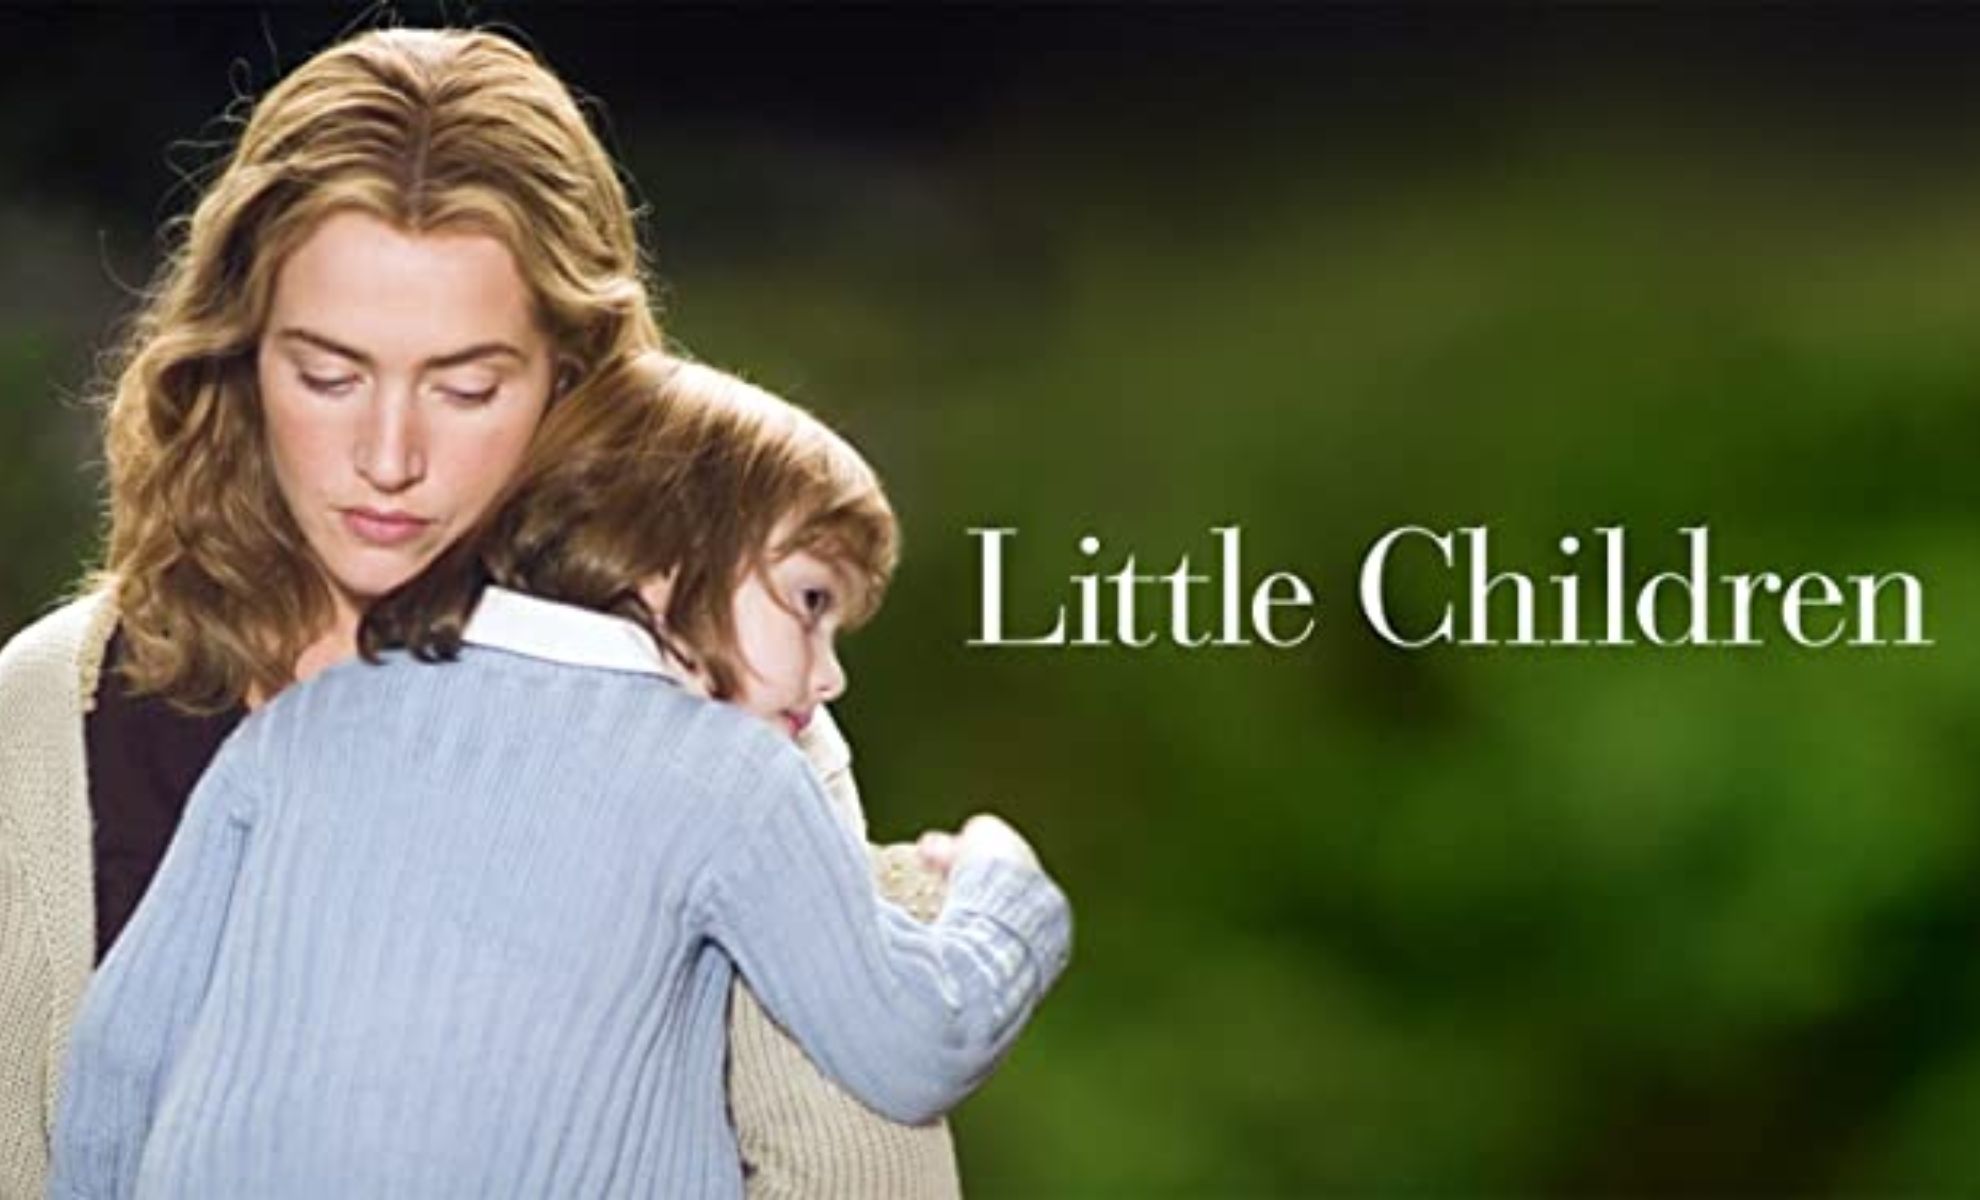 Little Children le film avec Kate Winslet bientôt sur Prime Video